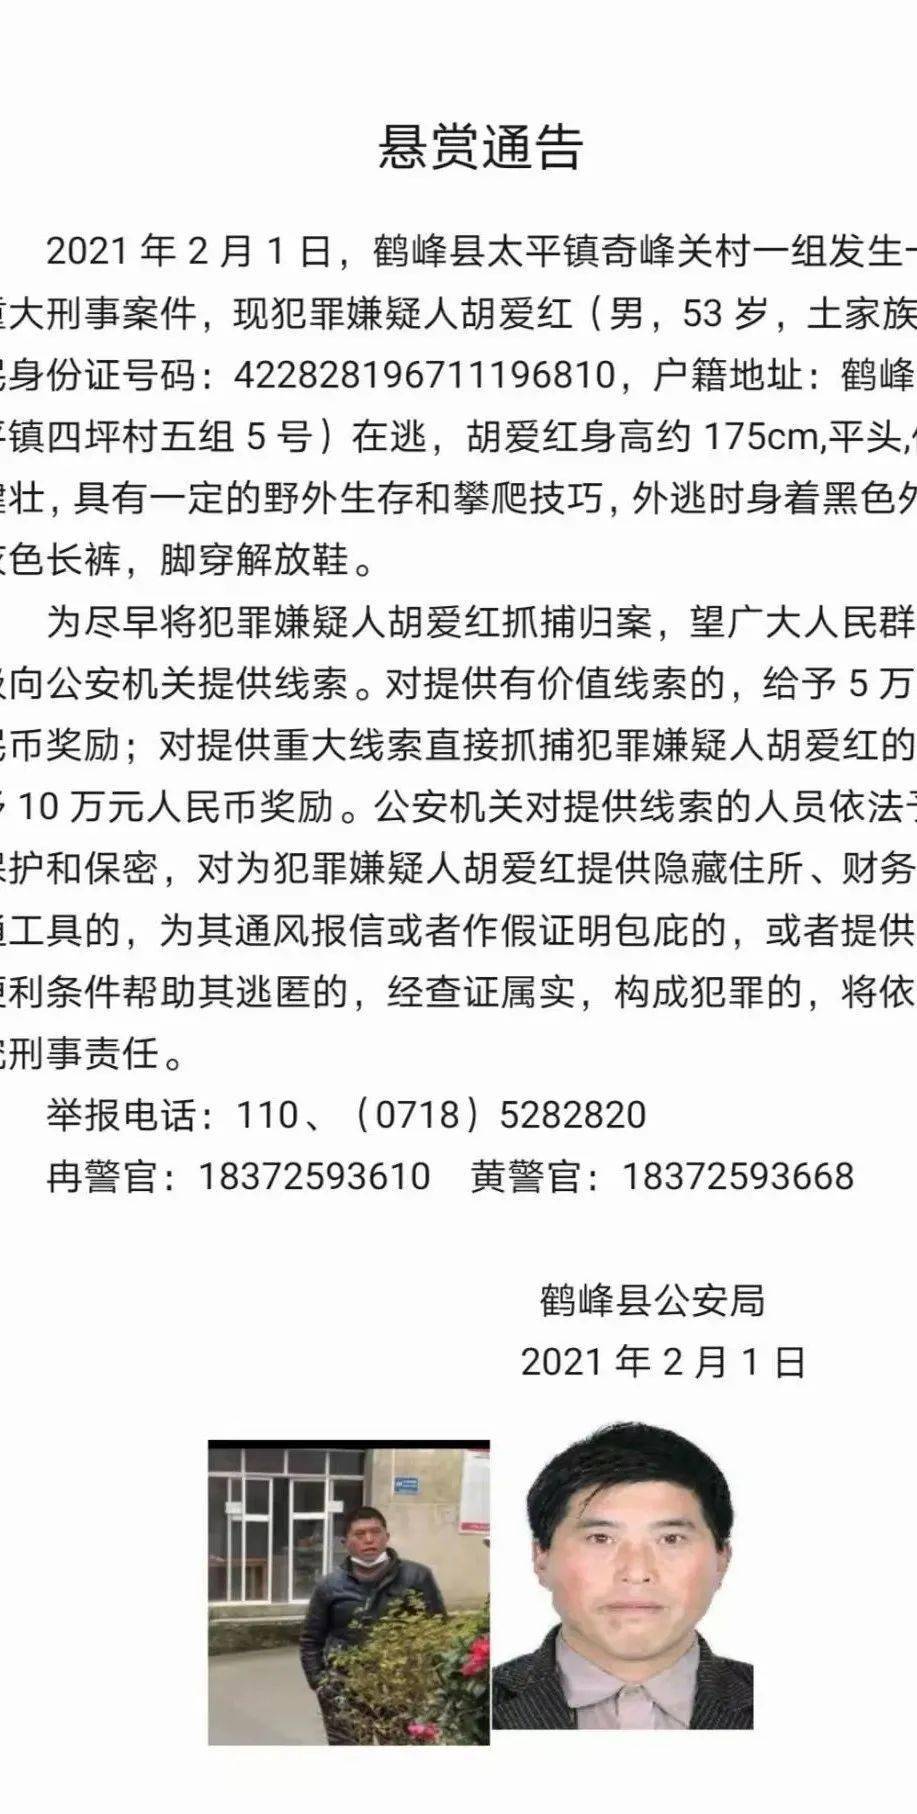 鹤峰21发生重大刑事案件官方悬赏通告最高十万元